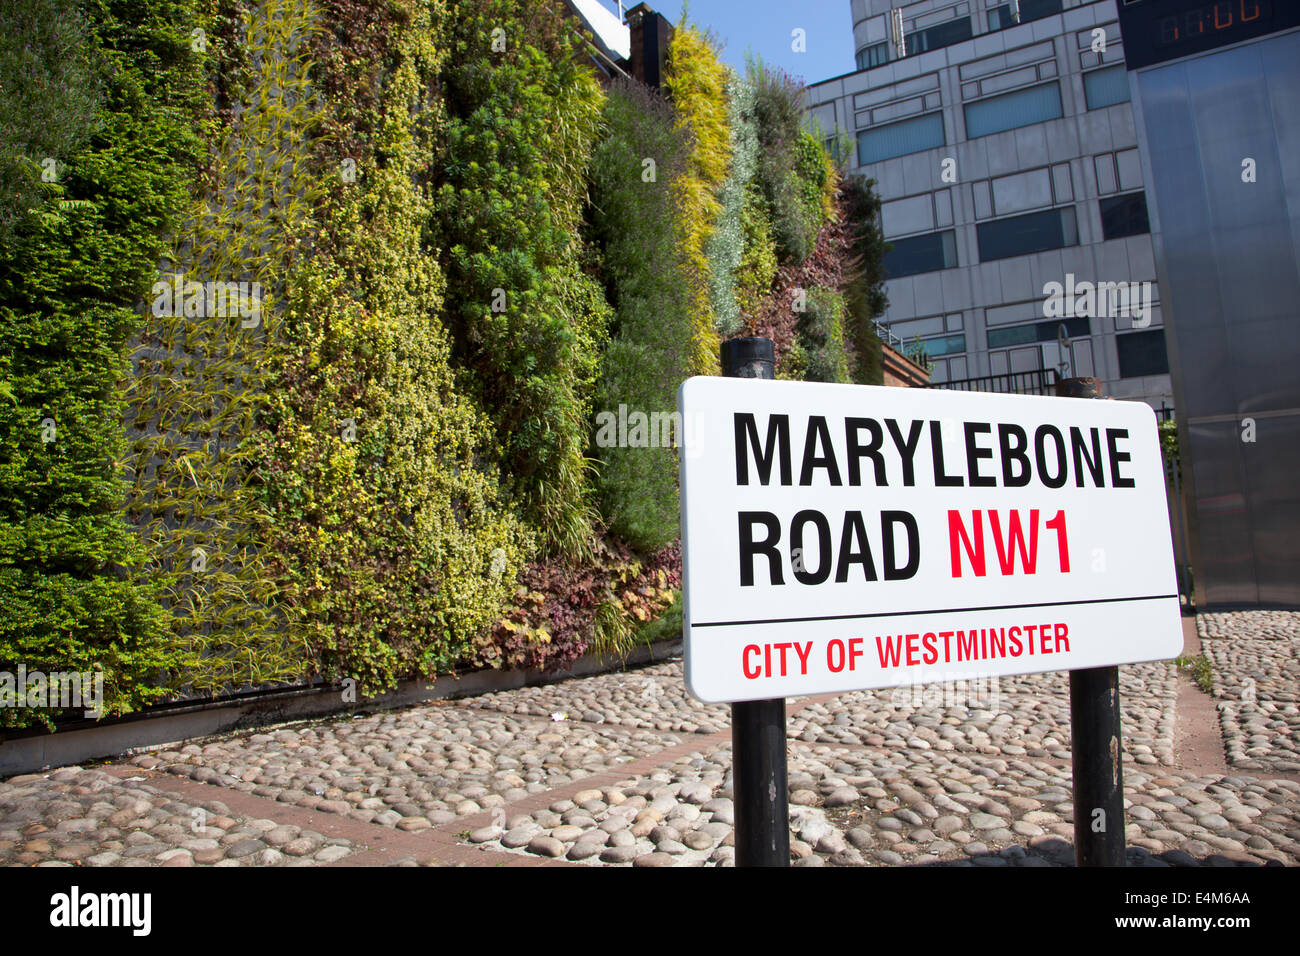 Regno Unito, Londra - Parete Verde su Marylebone Road è parte di TFL verde del piano di infrastrutture per migliorare la qualità dell'aria locale Foto Stock